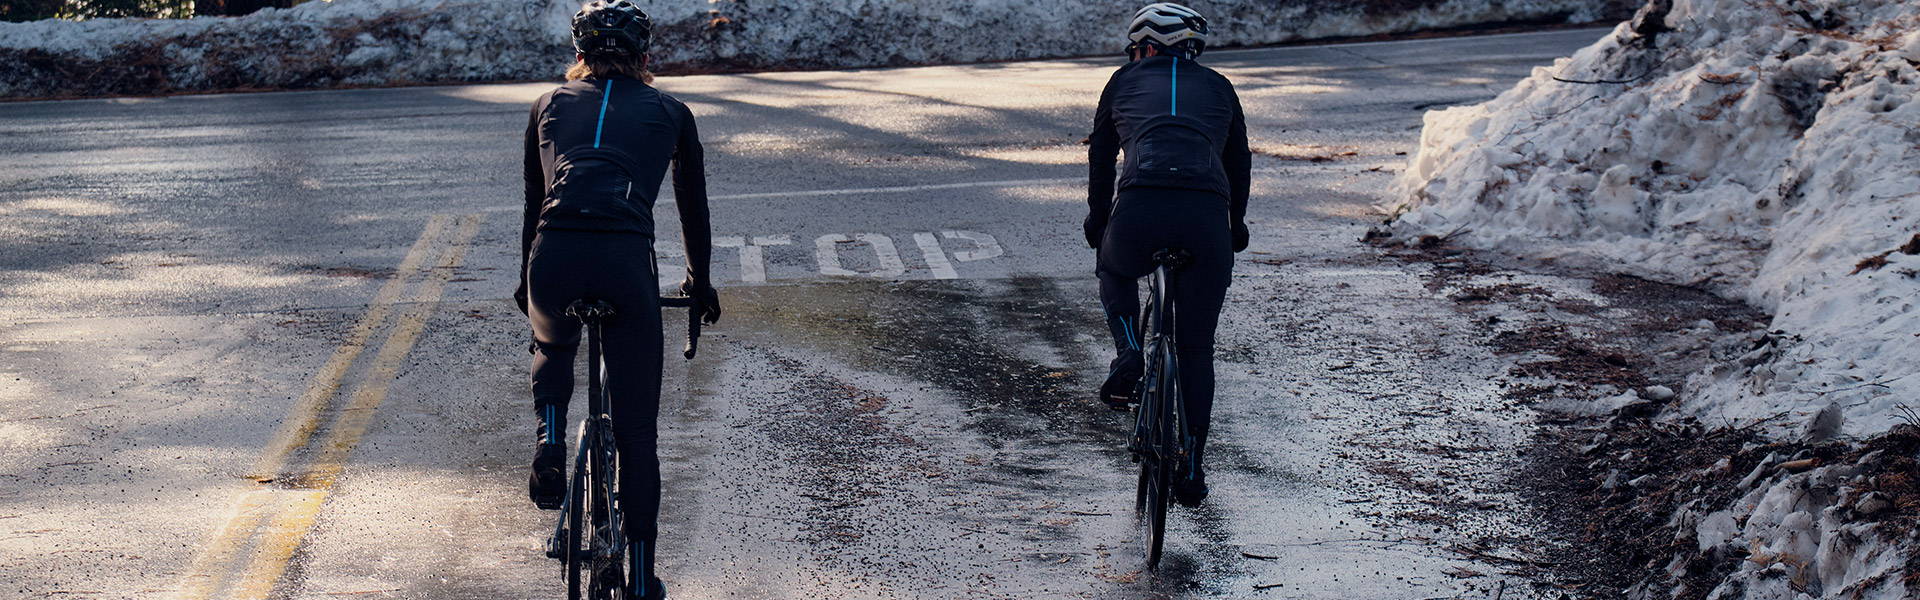 دوچرخه سواری در جاده یخ زده - آیبایک